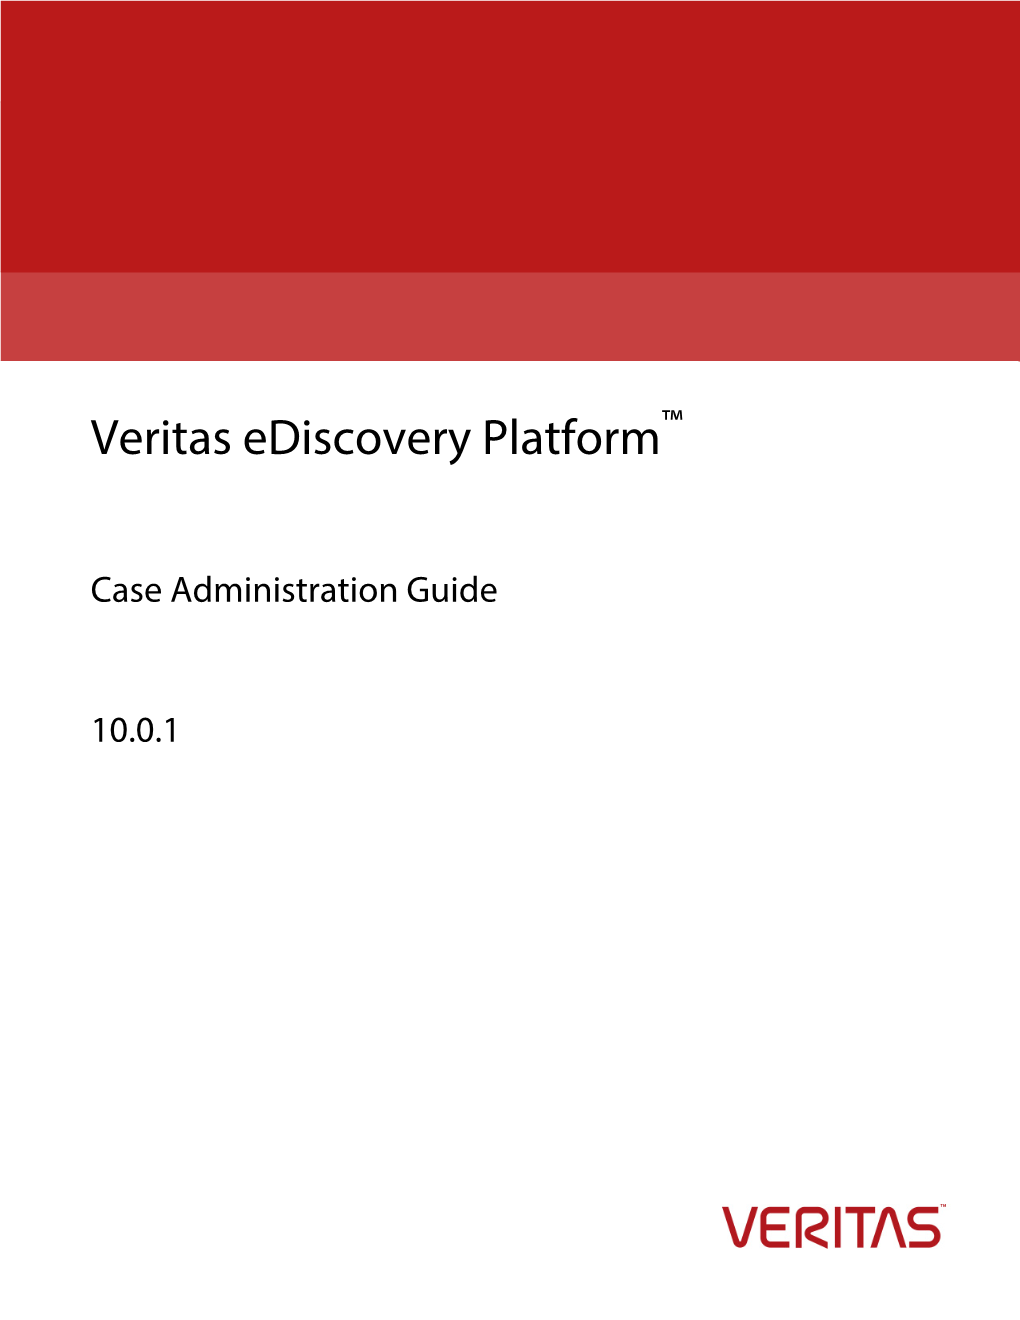 Veritas Ediscovery Platform™ 10.0.1 Case Administration Guide